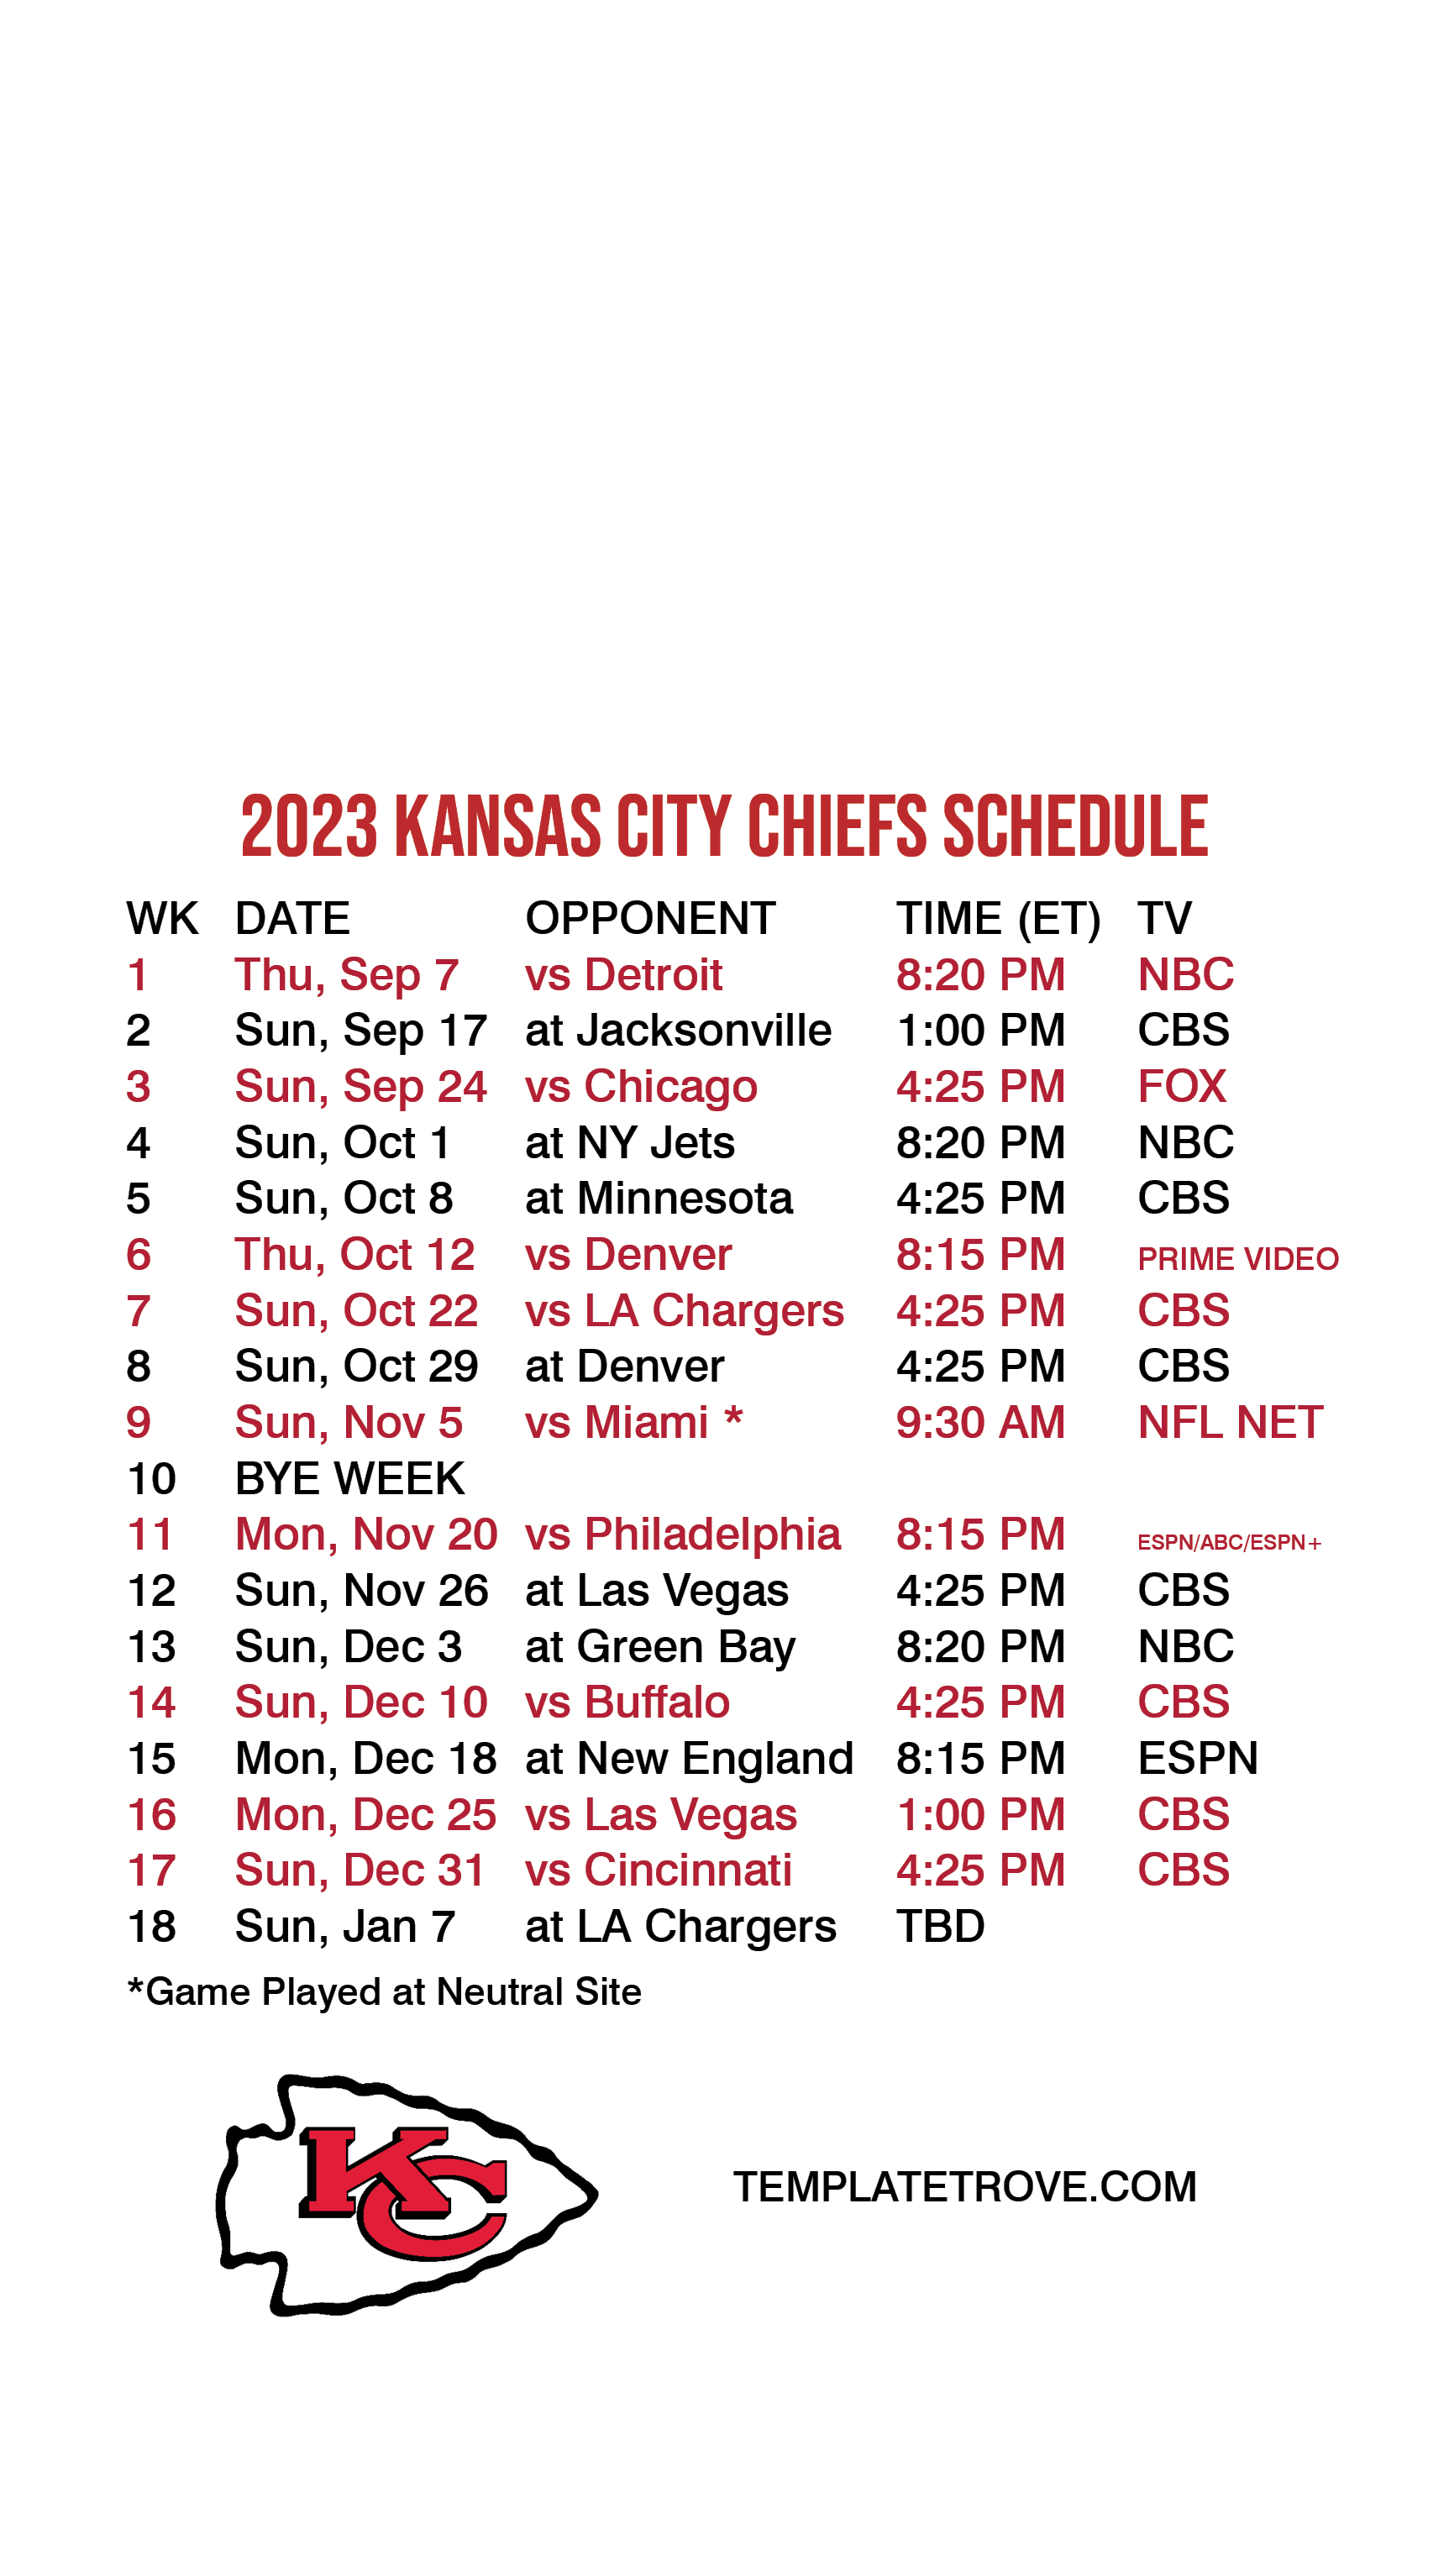 2021 kc chiefs schedule